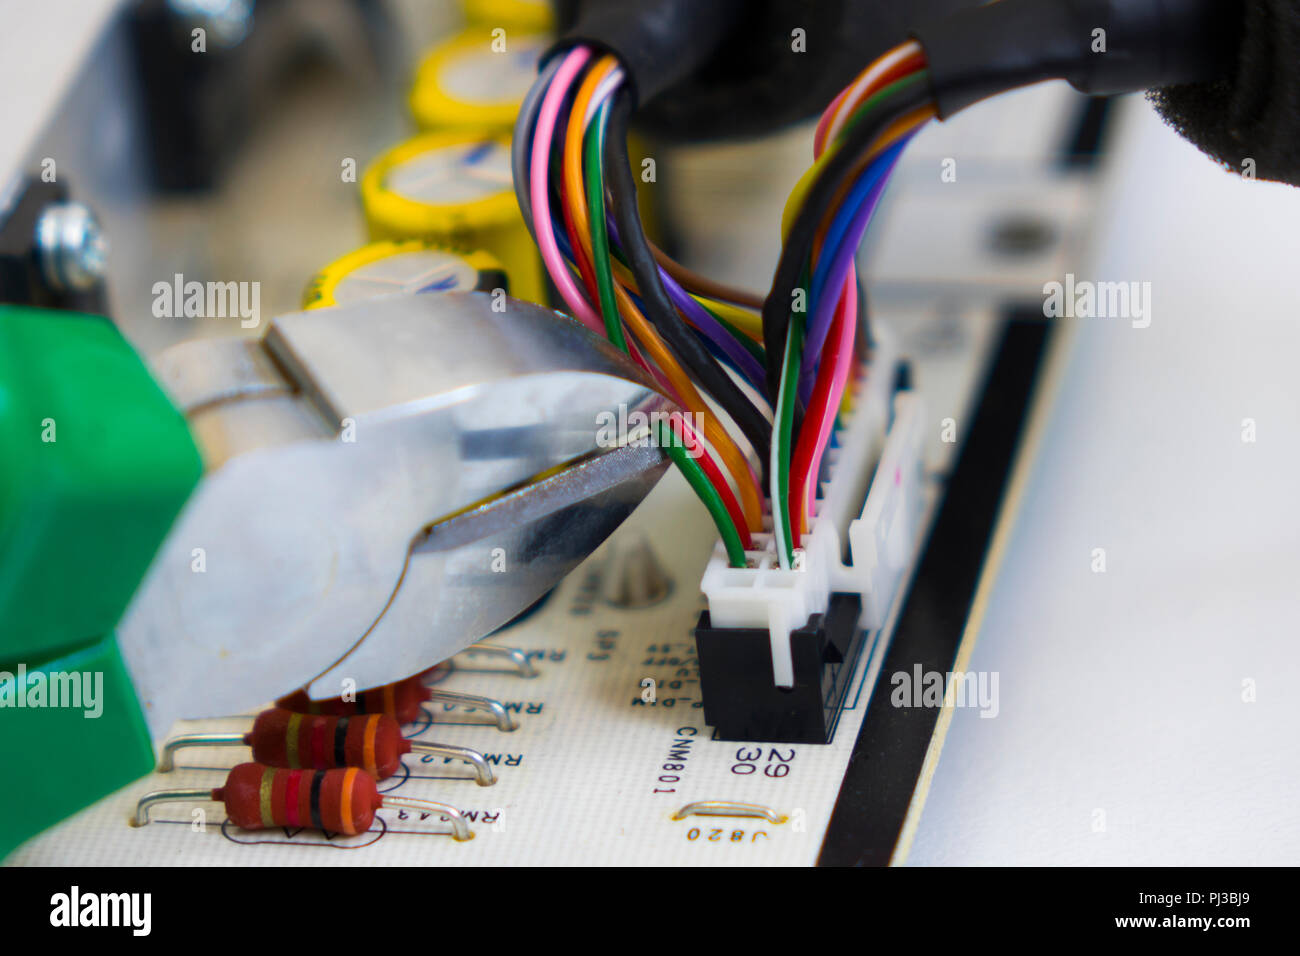 Desmontaje bomba electrónica, pinzas para cortar el cable rojo en un manojo de hilos de color sobre el trasfondo de la motherboard o chip electrónico Foto de stock